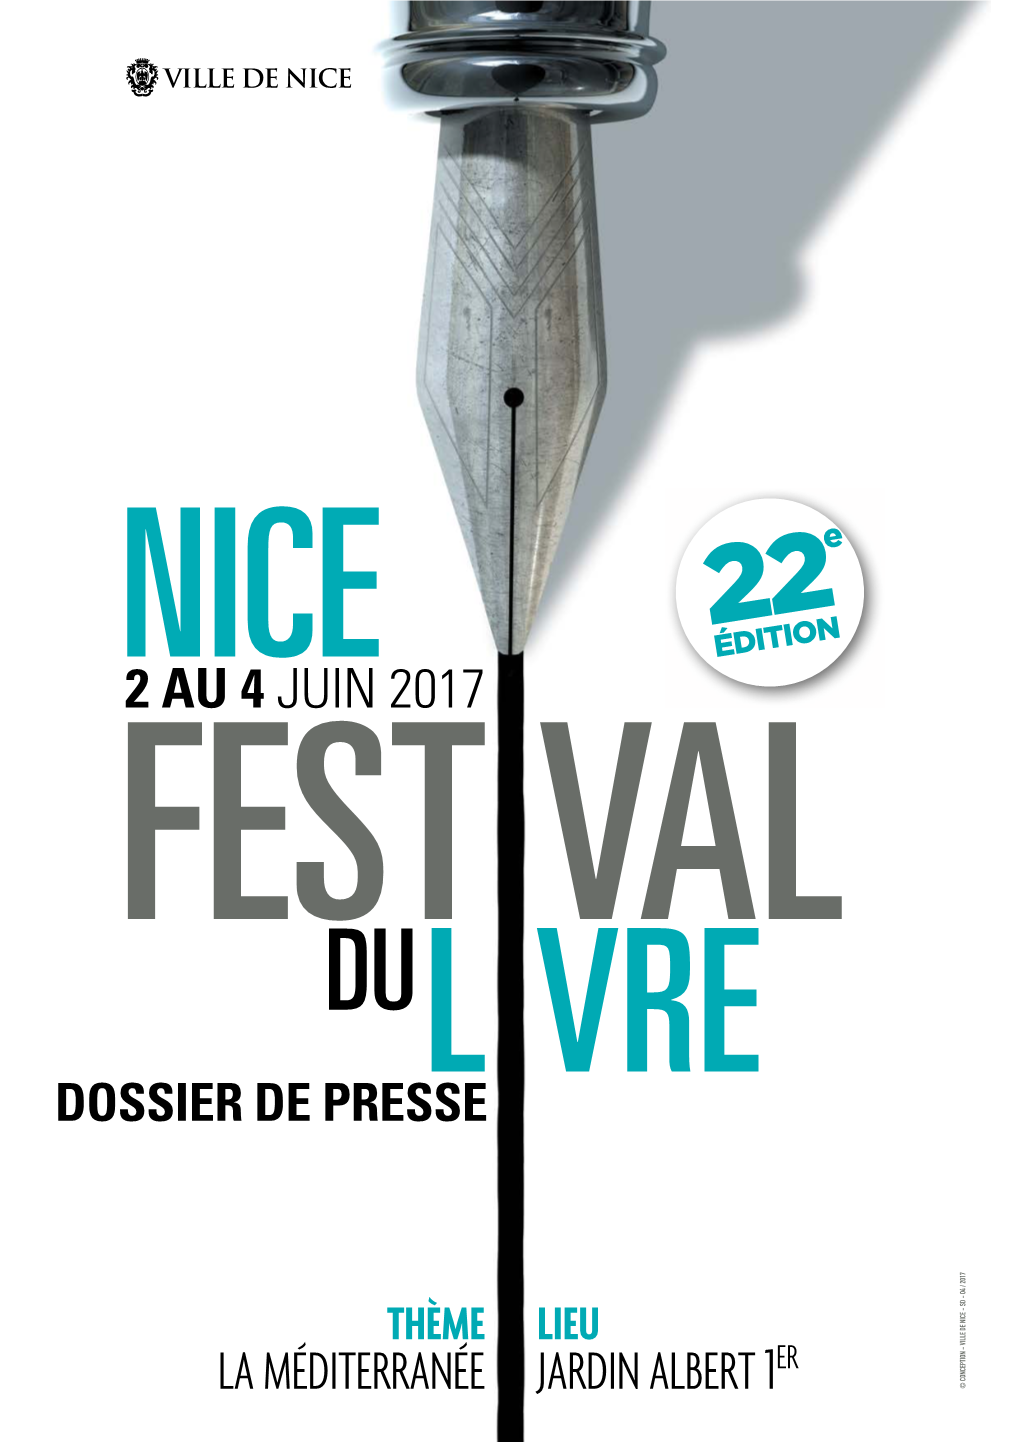 La Méditerranée Jardin Albert 1 © Conception - Ville De Nice Sd 04 / 2017 Festival Du Livre De Nice 2 Au 4 Juin 2017 Dossier De Presse 2/32